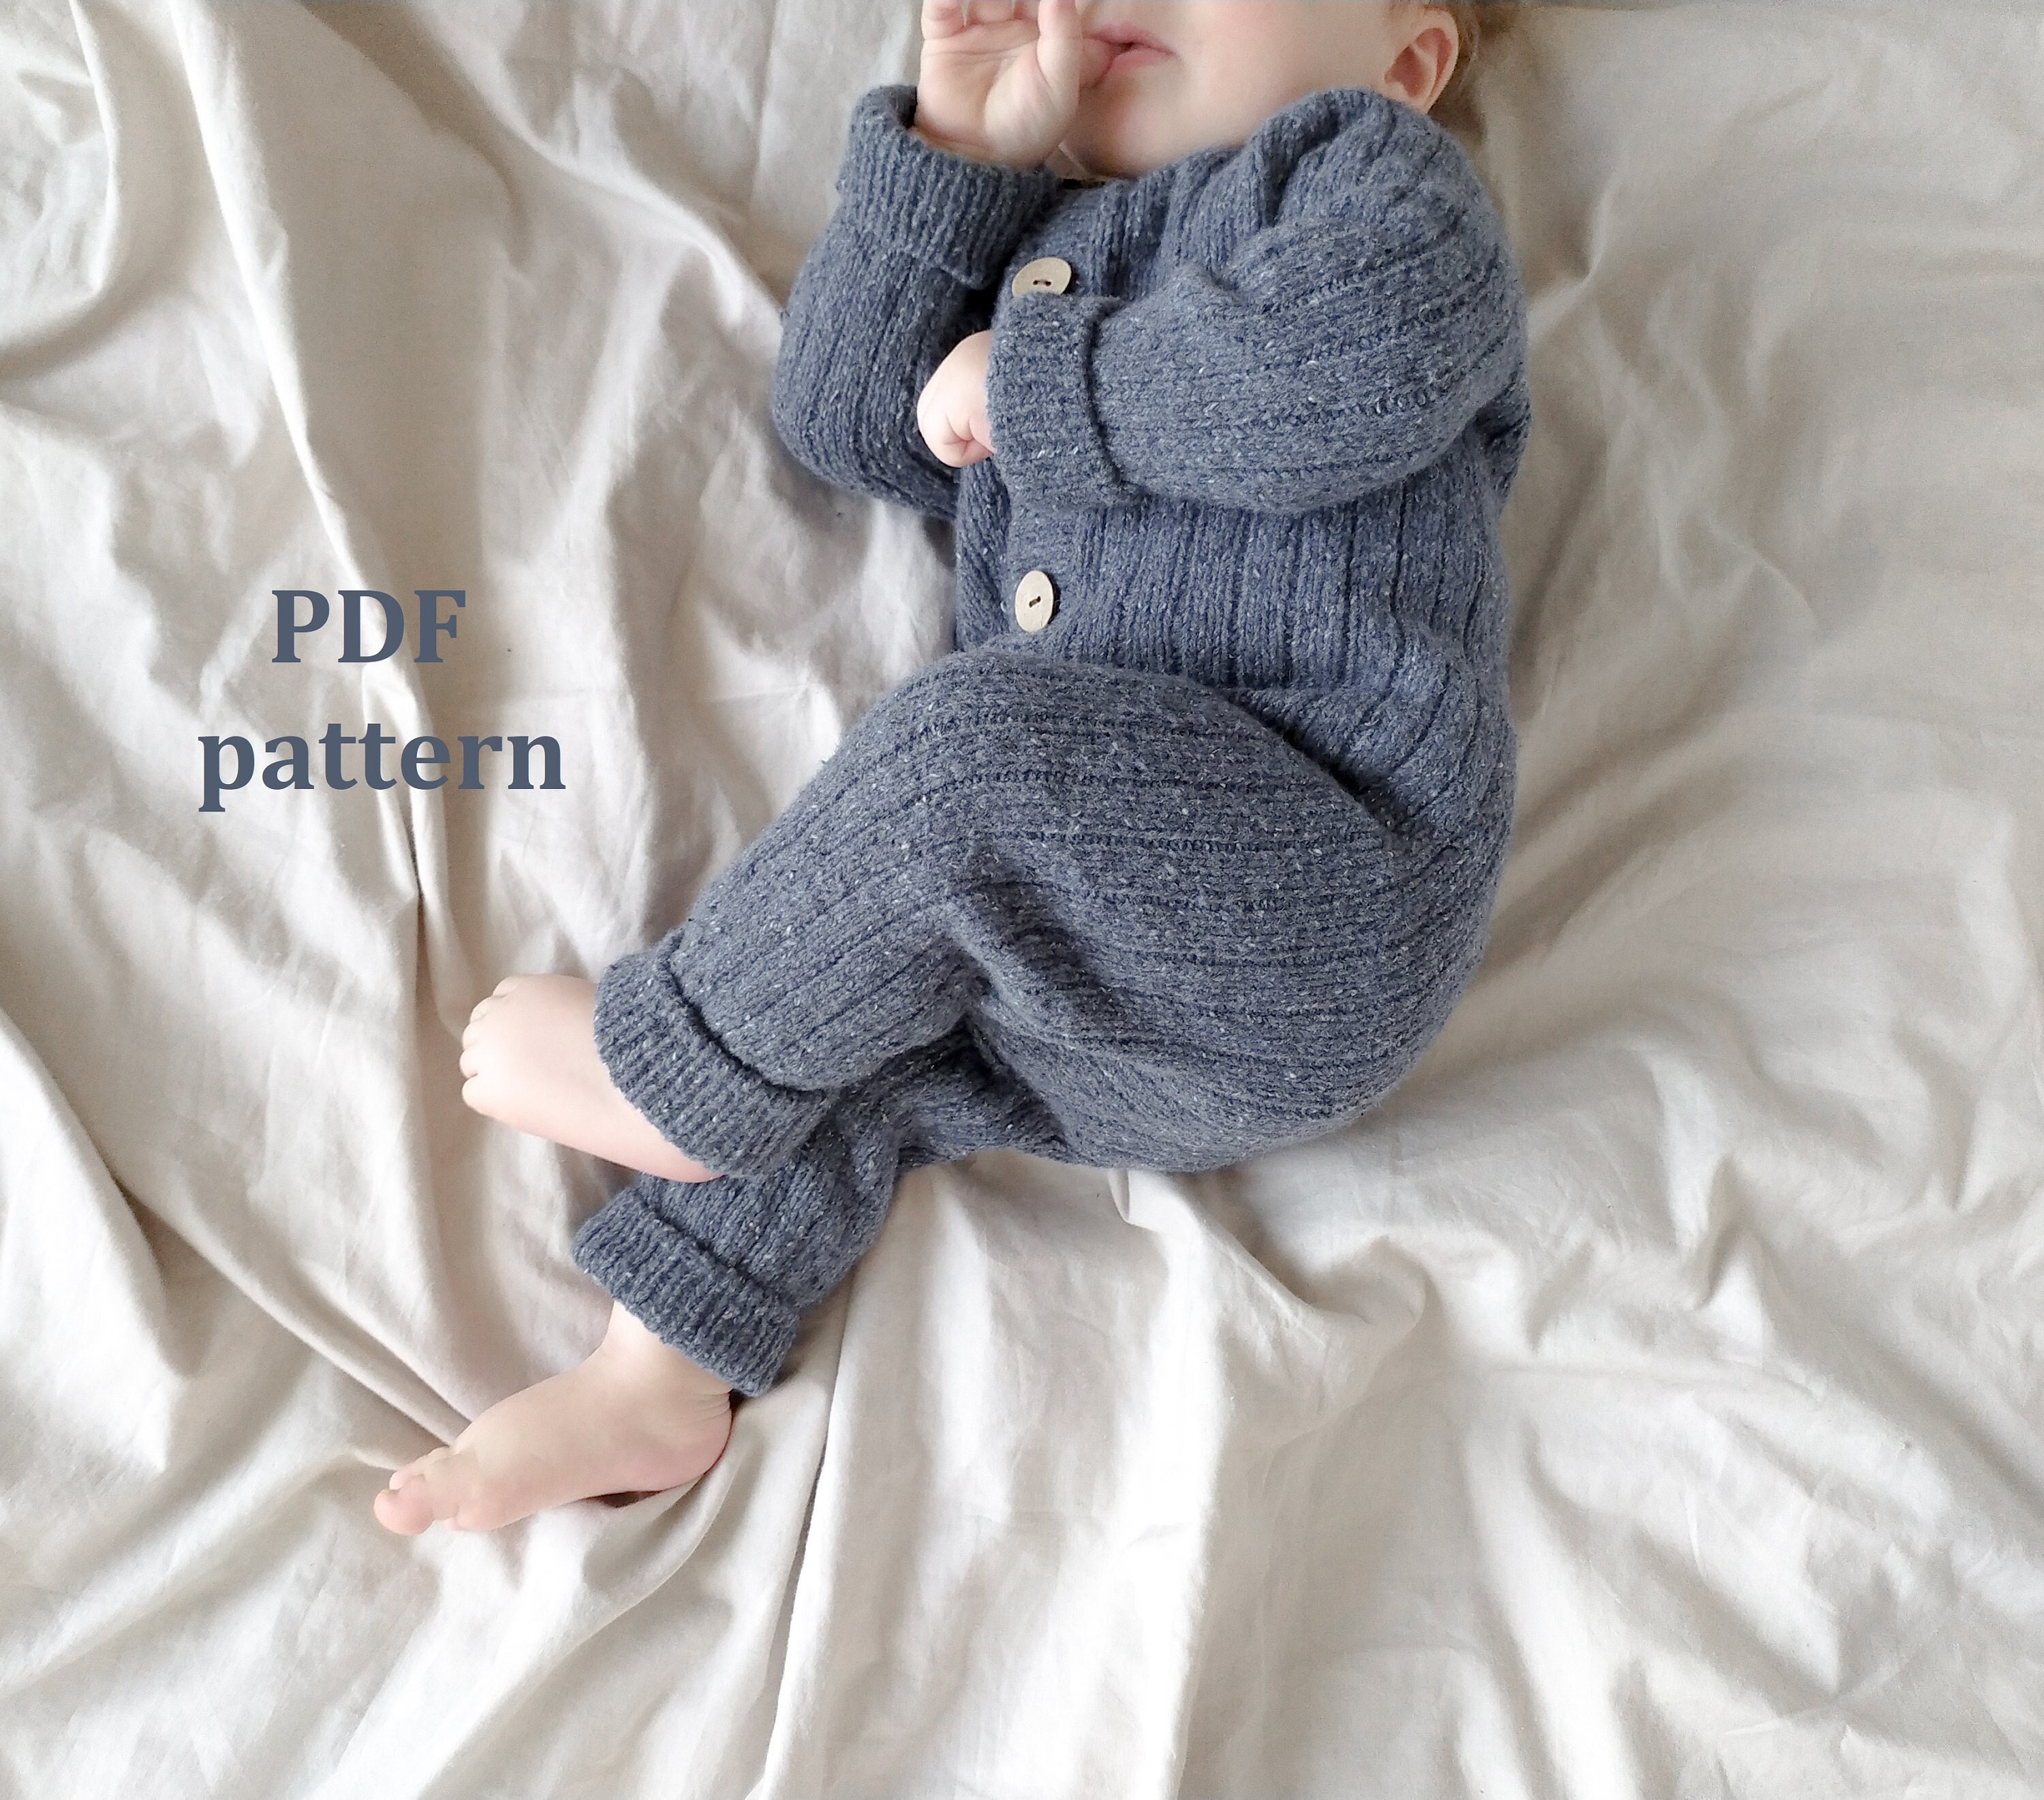 NEWBORN Baby Dress Woolen 0-3 Month Baby Boy Blue And White | eBay